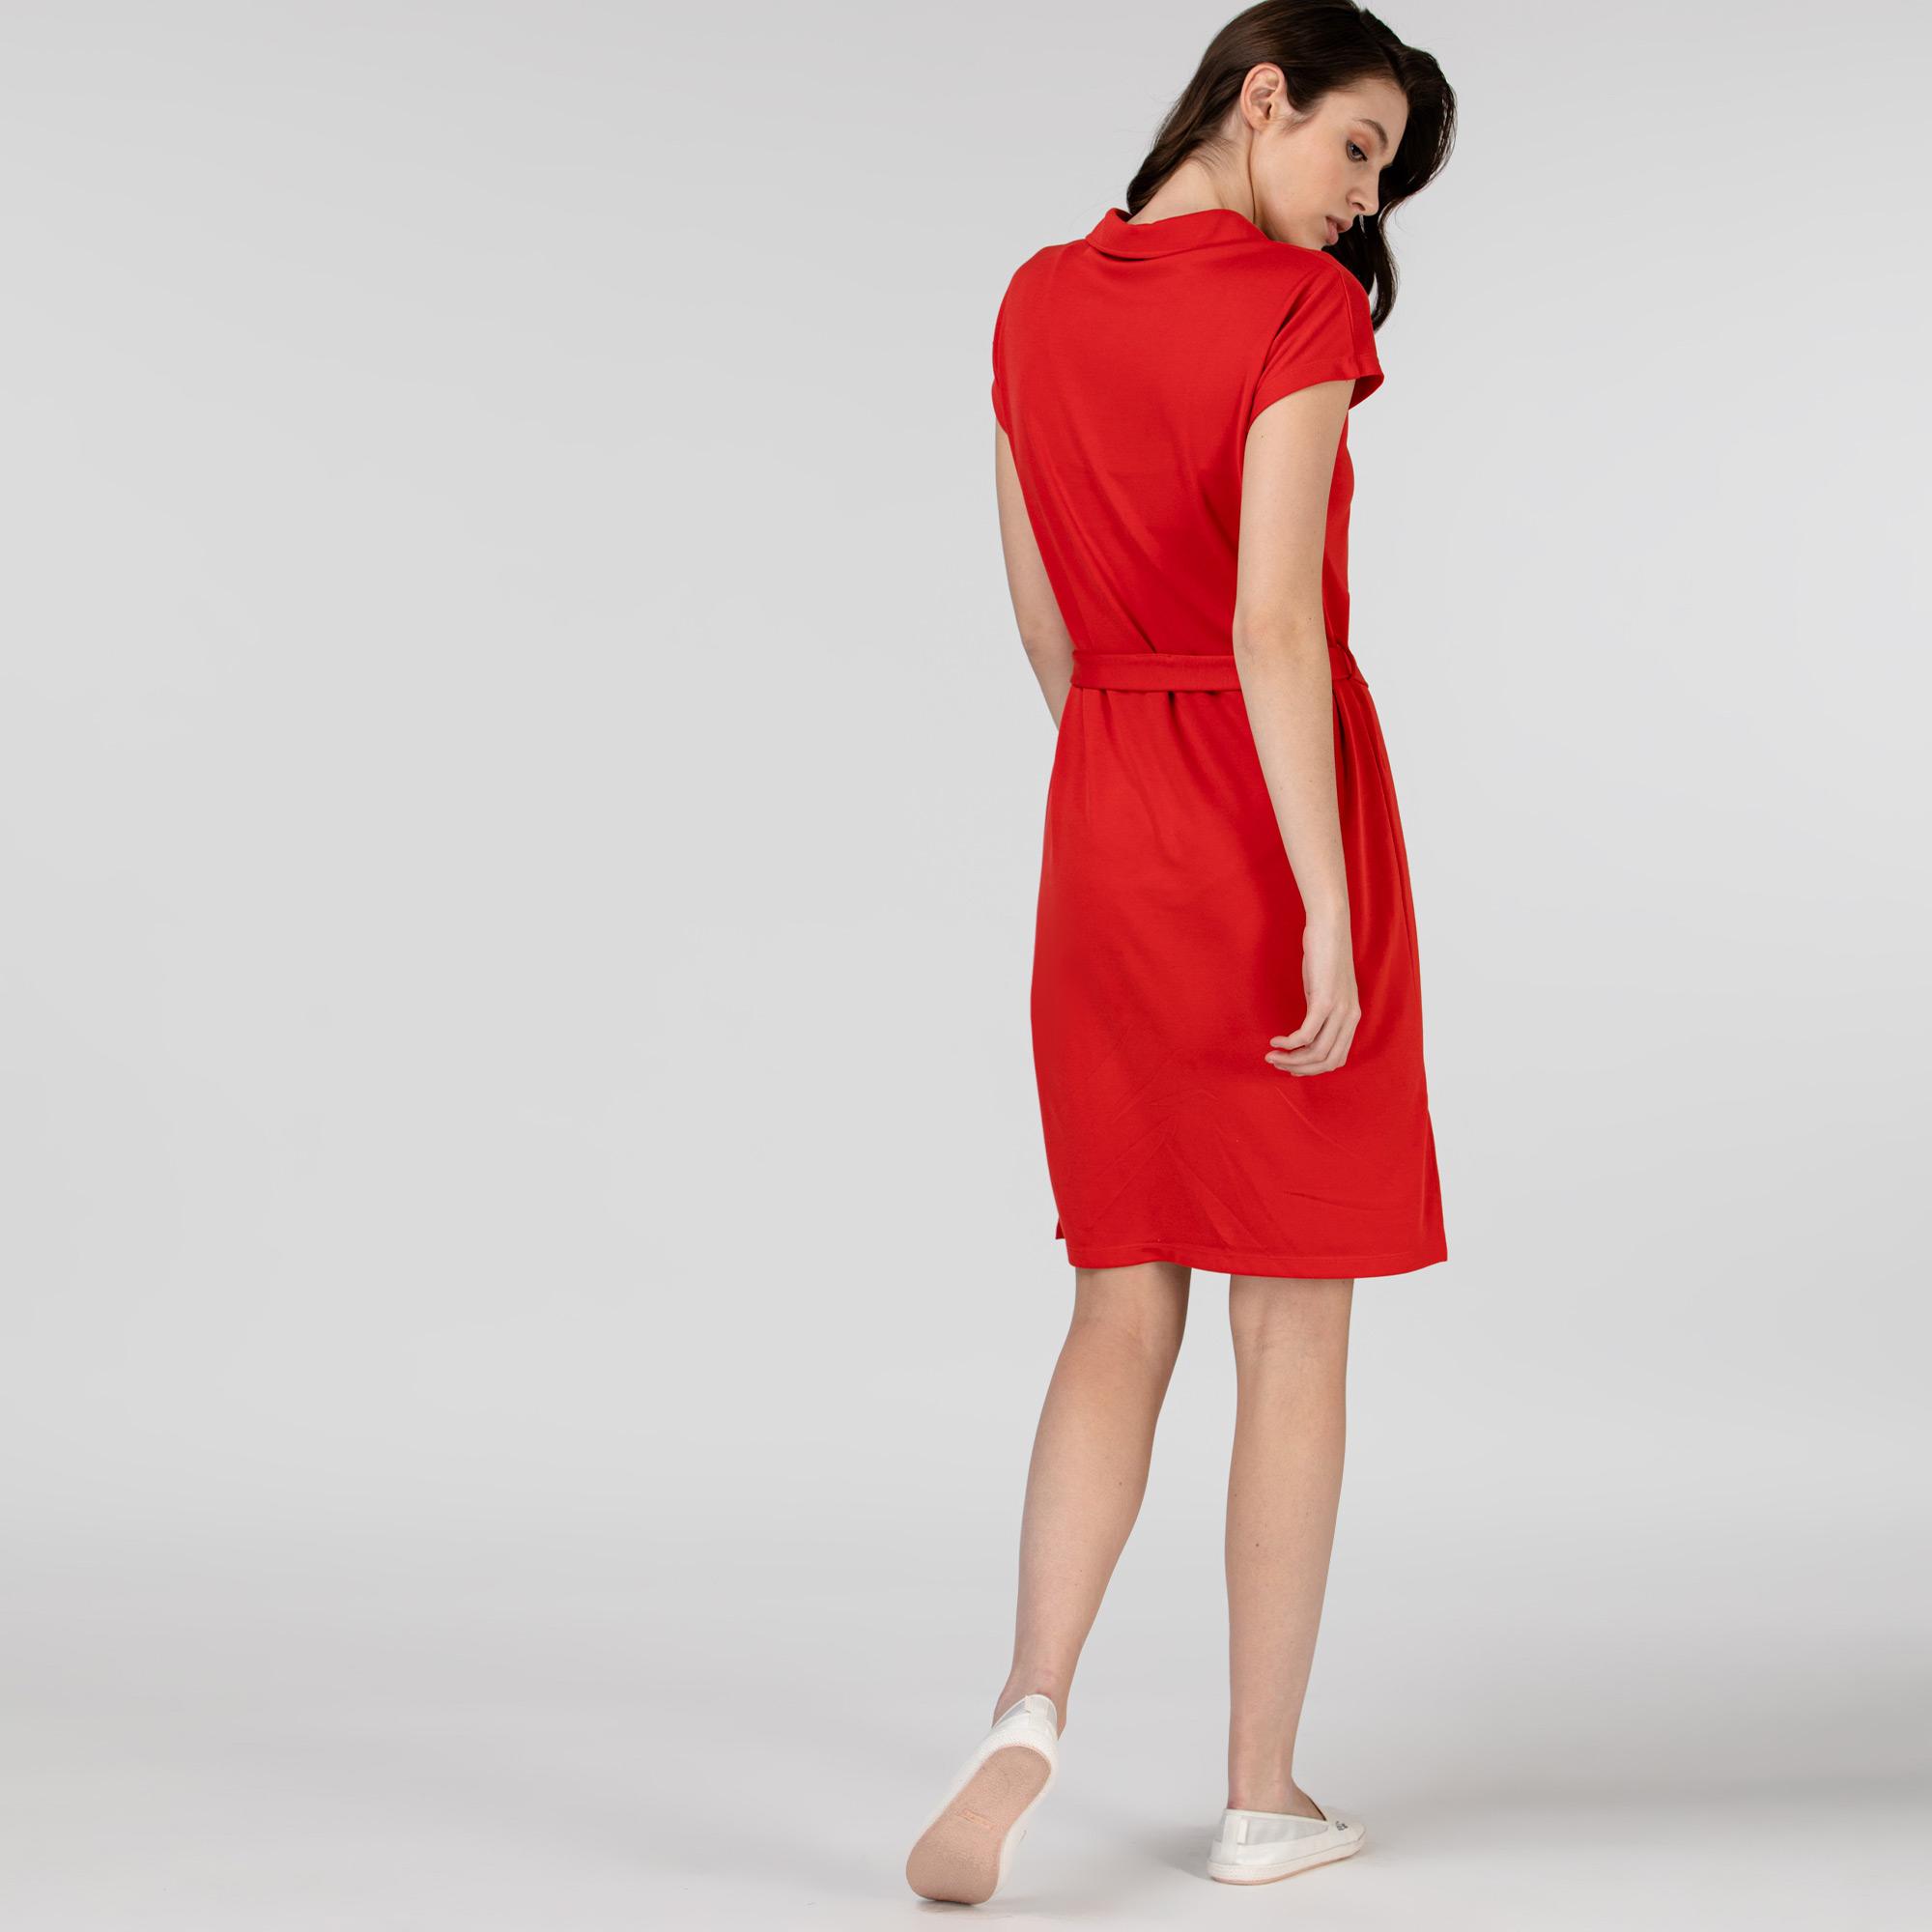 Lacoste Kadın Kısa Kollu Kırmızı Elbise. 4